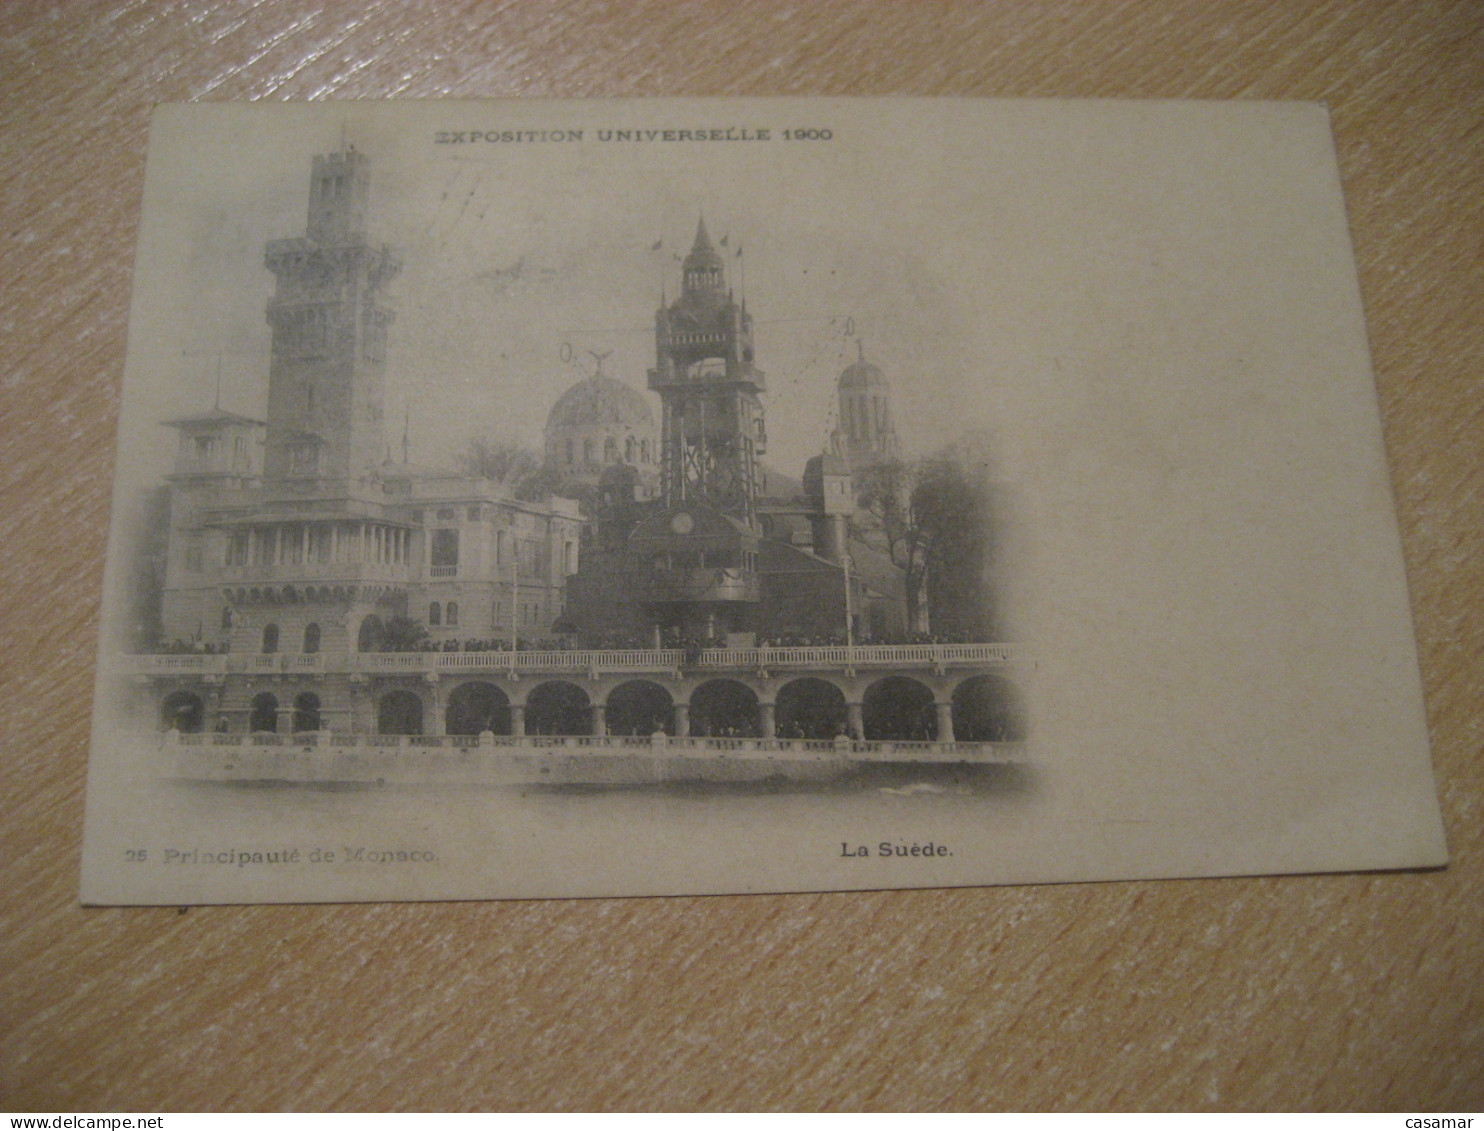 PARIS 1900 Universal Exposition Cancel To Montpellier Principaute De Monaco La Suede Postcard FRANCE Expo Universelle - 1900 – Pariis (France)